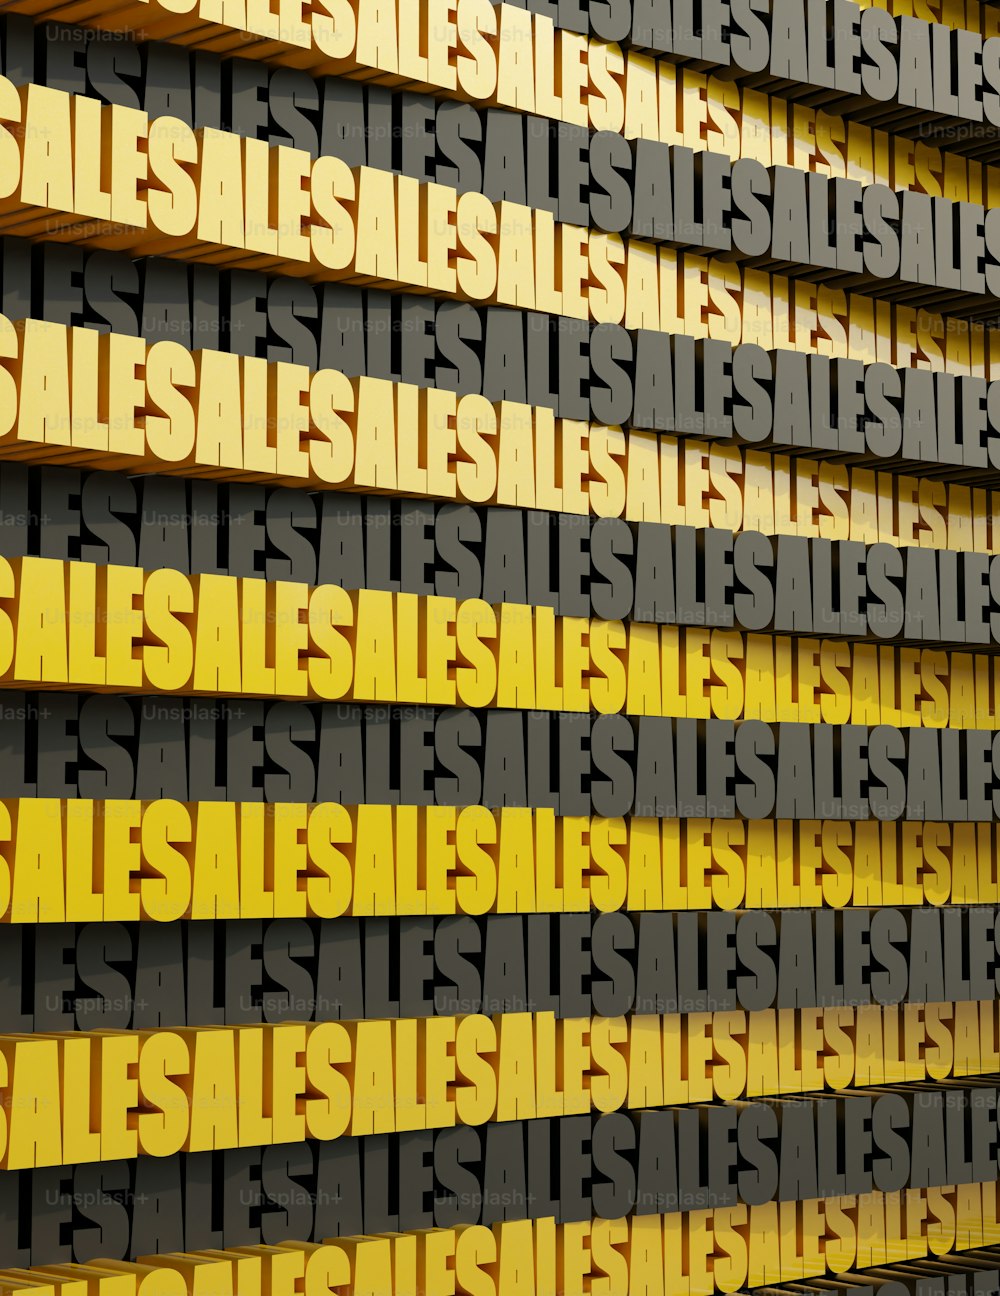 Eine gelb-schwarze Wand mit vielen Worten darauf